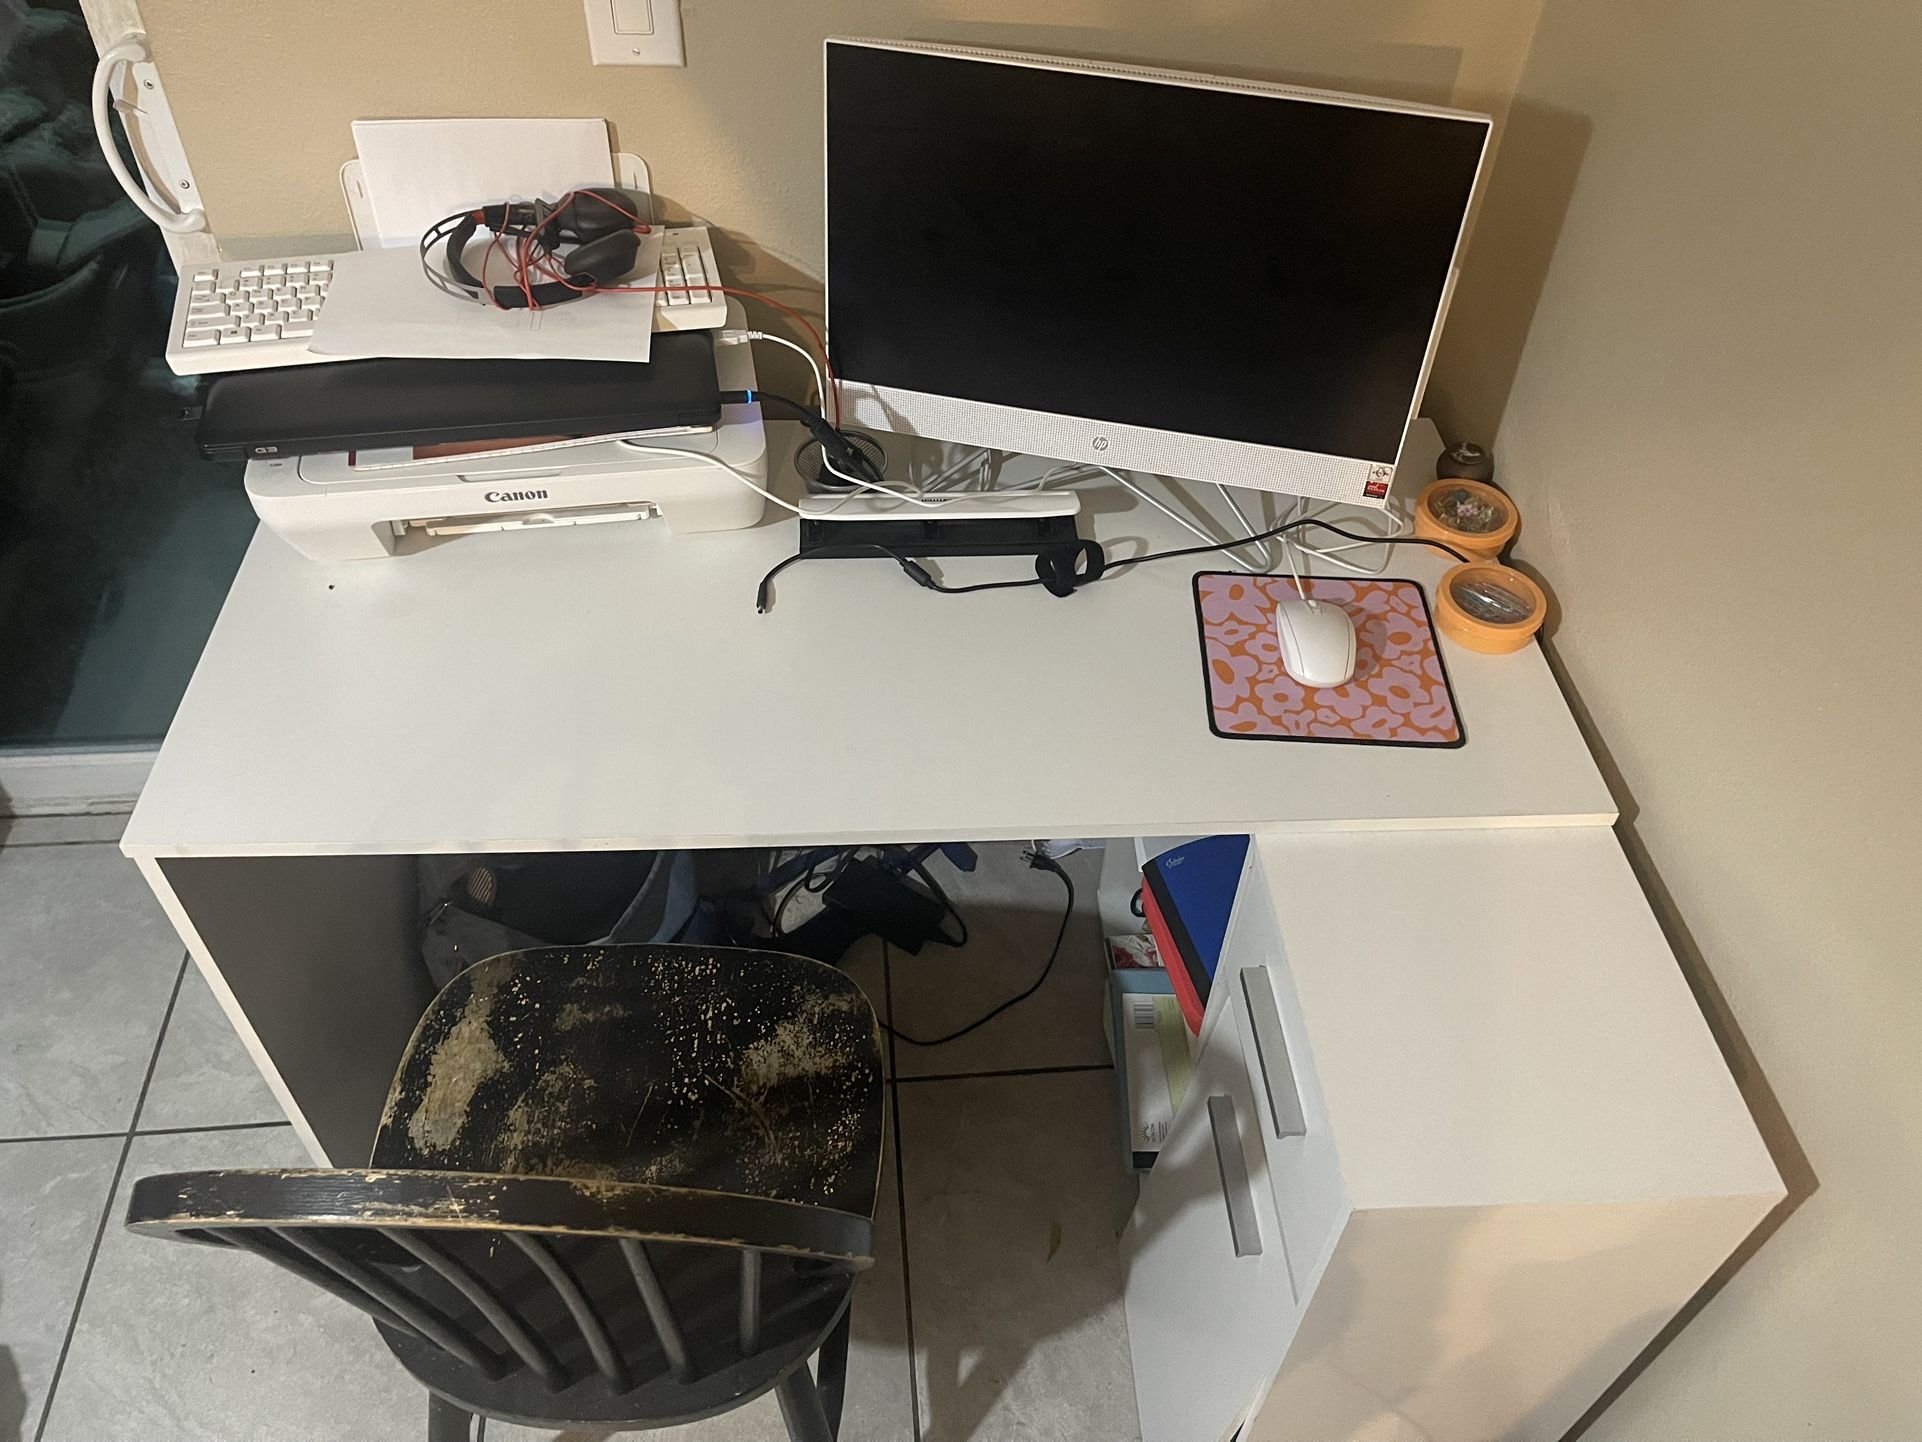 White L Shaped Desk